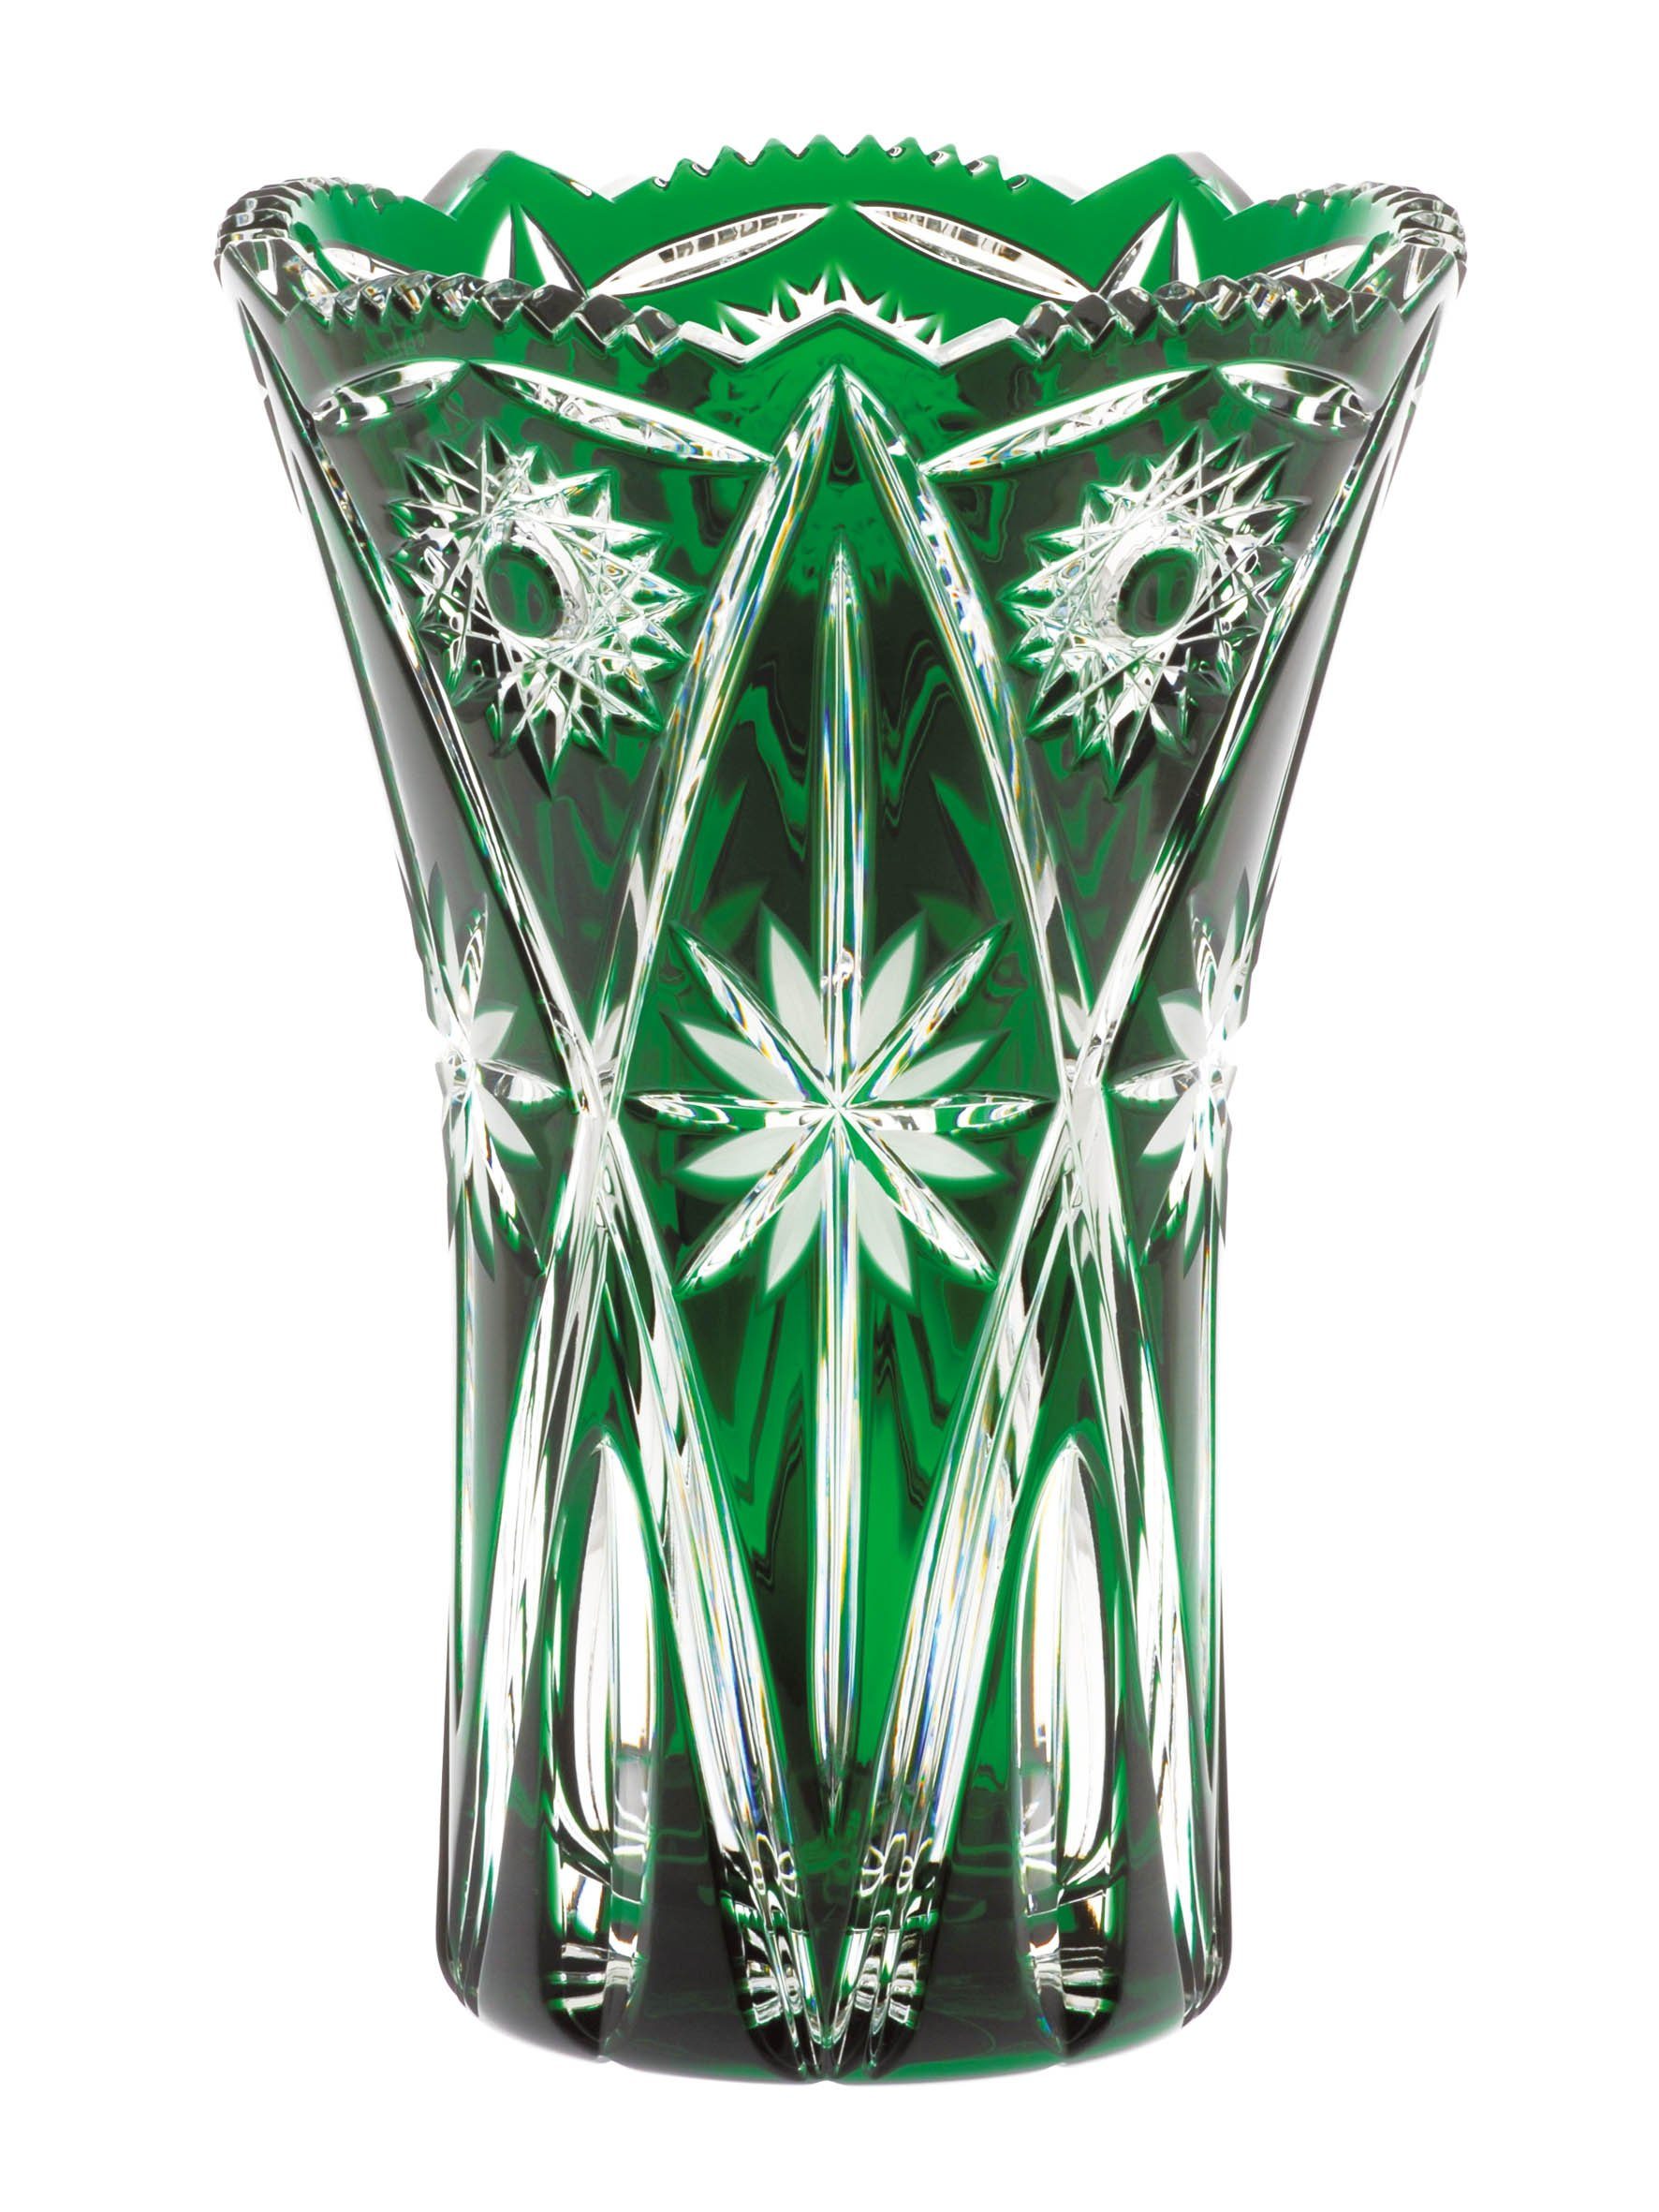 ARNSTADT KRISTALL Tischvase »ARNSTADT KRISTALL Vase Nizza smaragd grün (26  cm) - Kristallglas mundgeblasen · handgeschliffen · Ha« online kaufen | OTTO